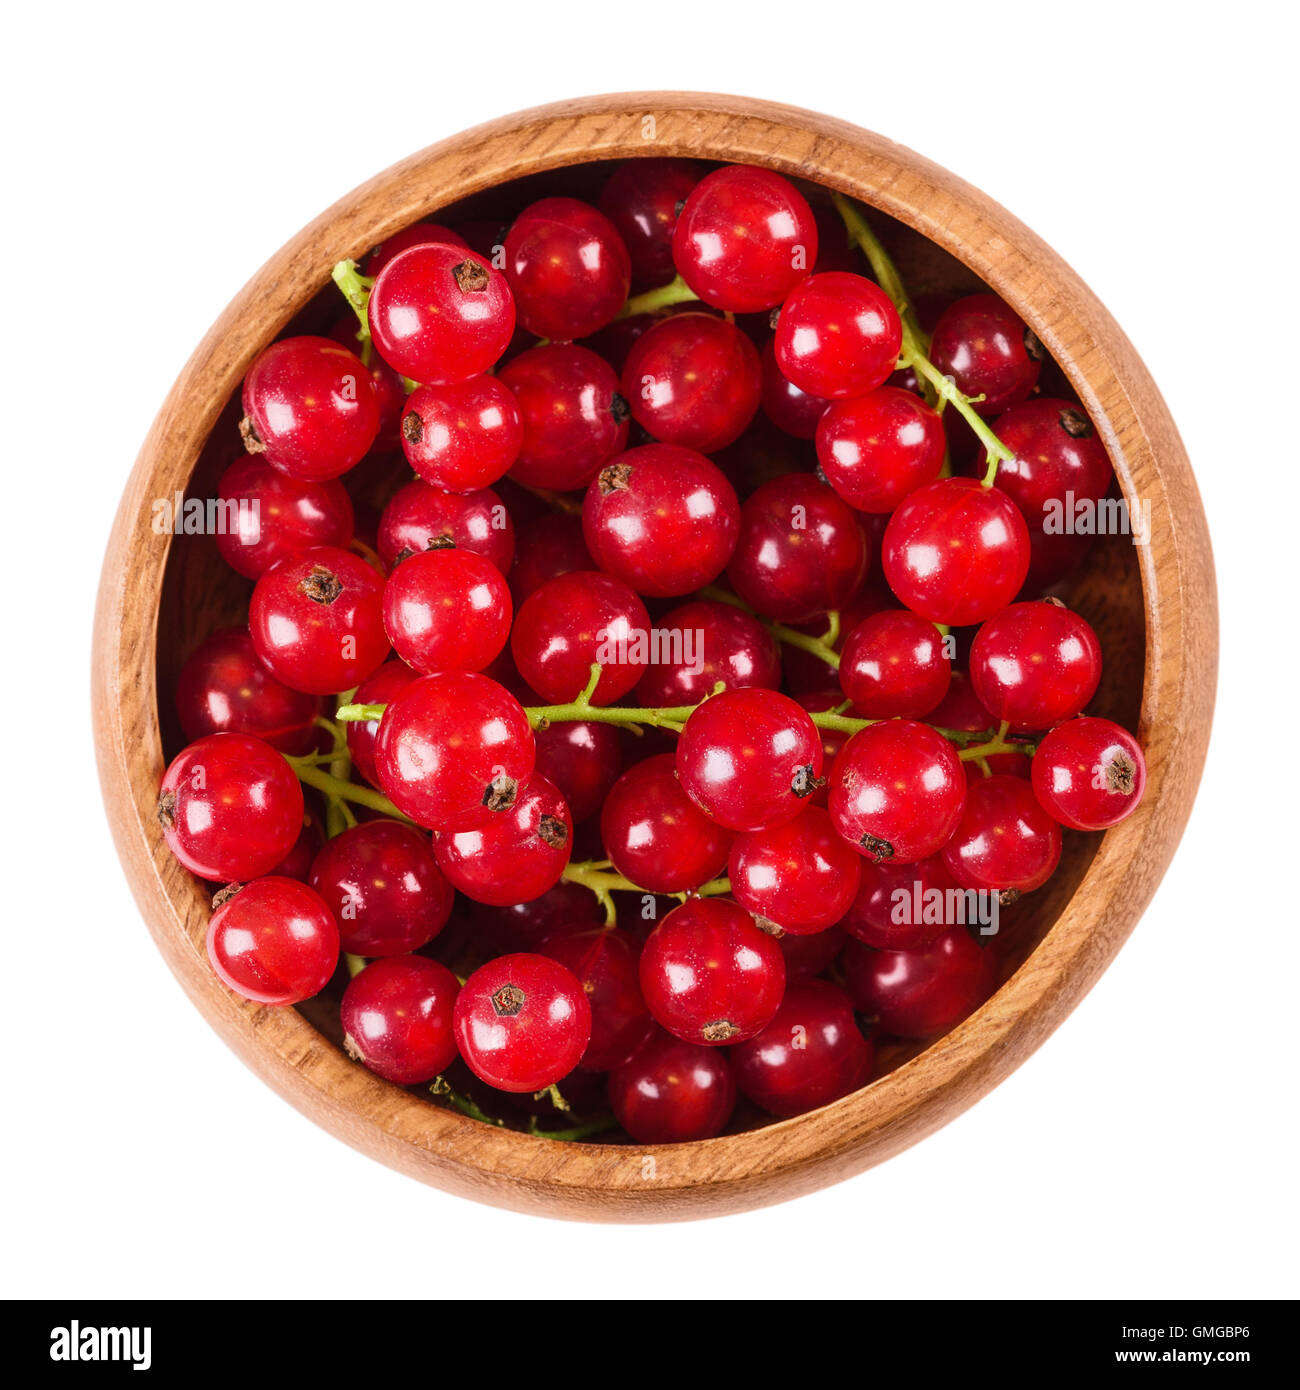 Les baies de groseilles dans un bol en bois sur fond blanc, aussi appelé red currant. Fruits mûrs de Ribes rubrum, groseilles. Banque D'Images